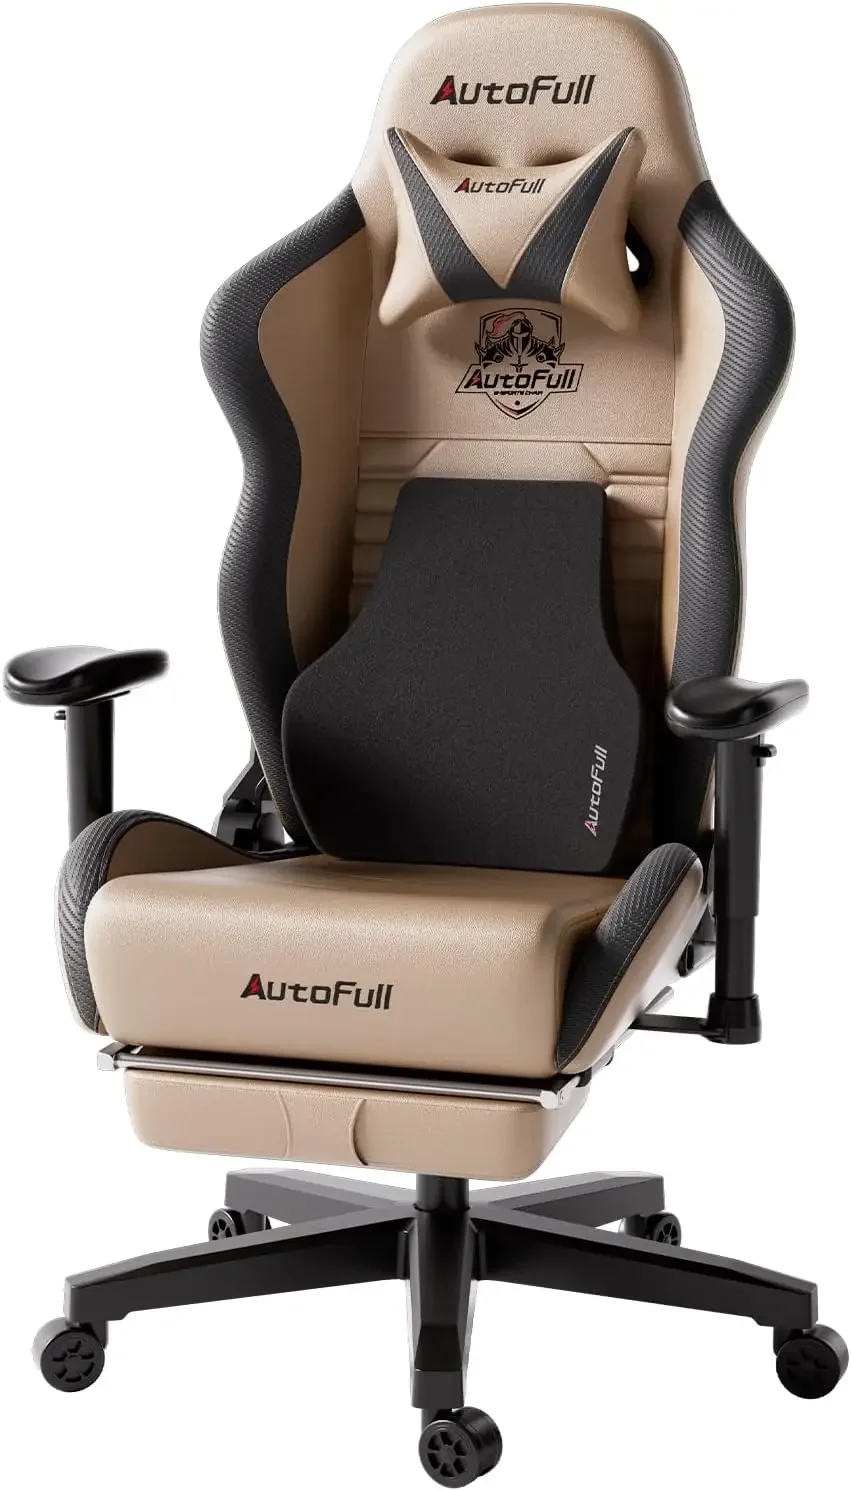 

Кресло для игр autofull, компьютерный стул с эргономичной поддержкой поясницы, регулируемая спинка из искусственной кожи с высокой спинкой, В гоночном стиле, Sw